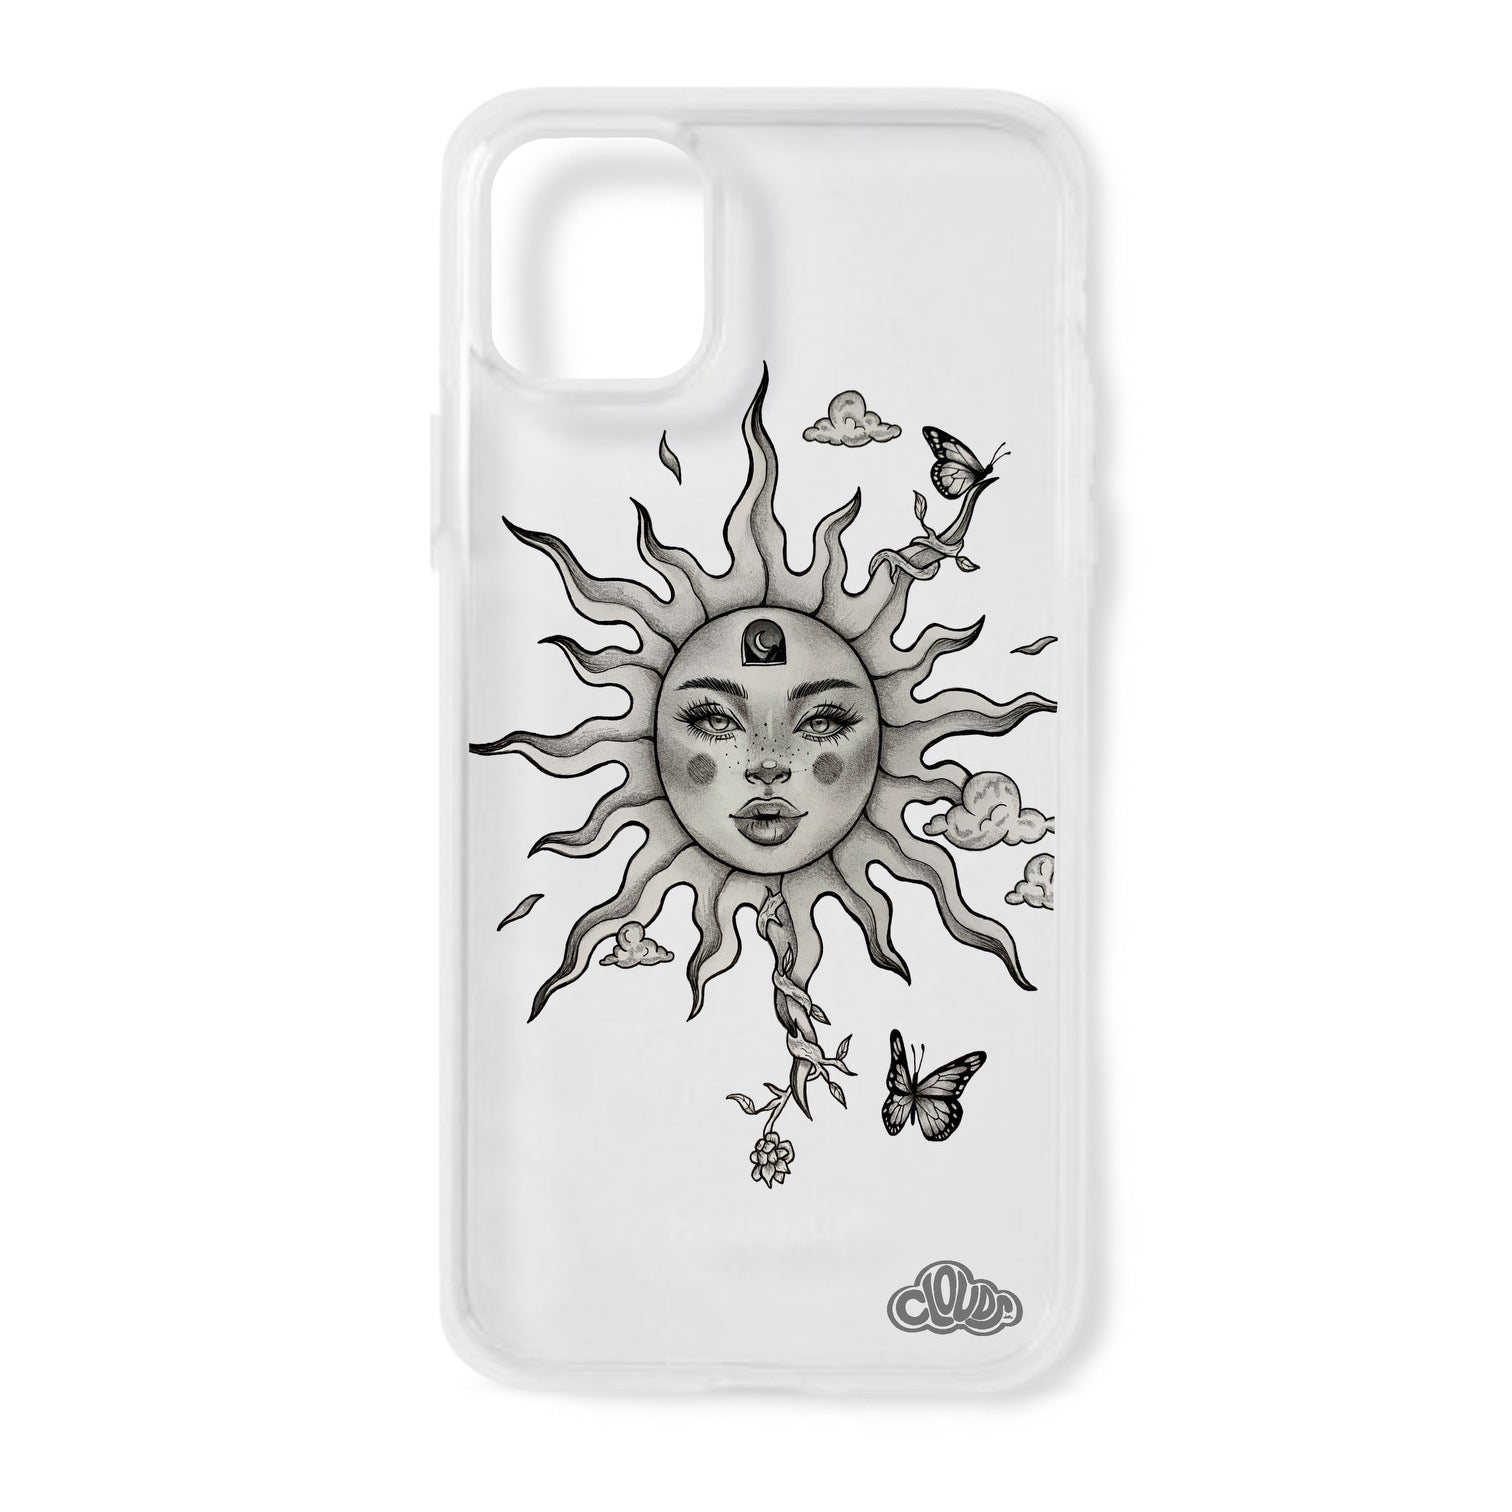 The Sun iPhone Case